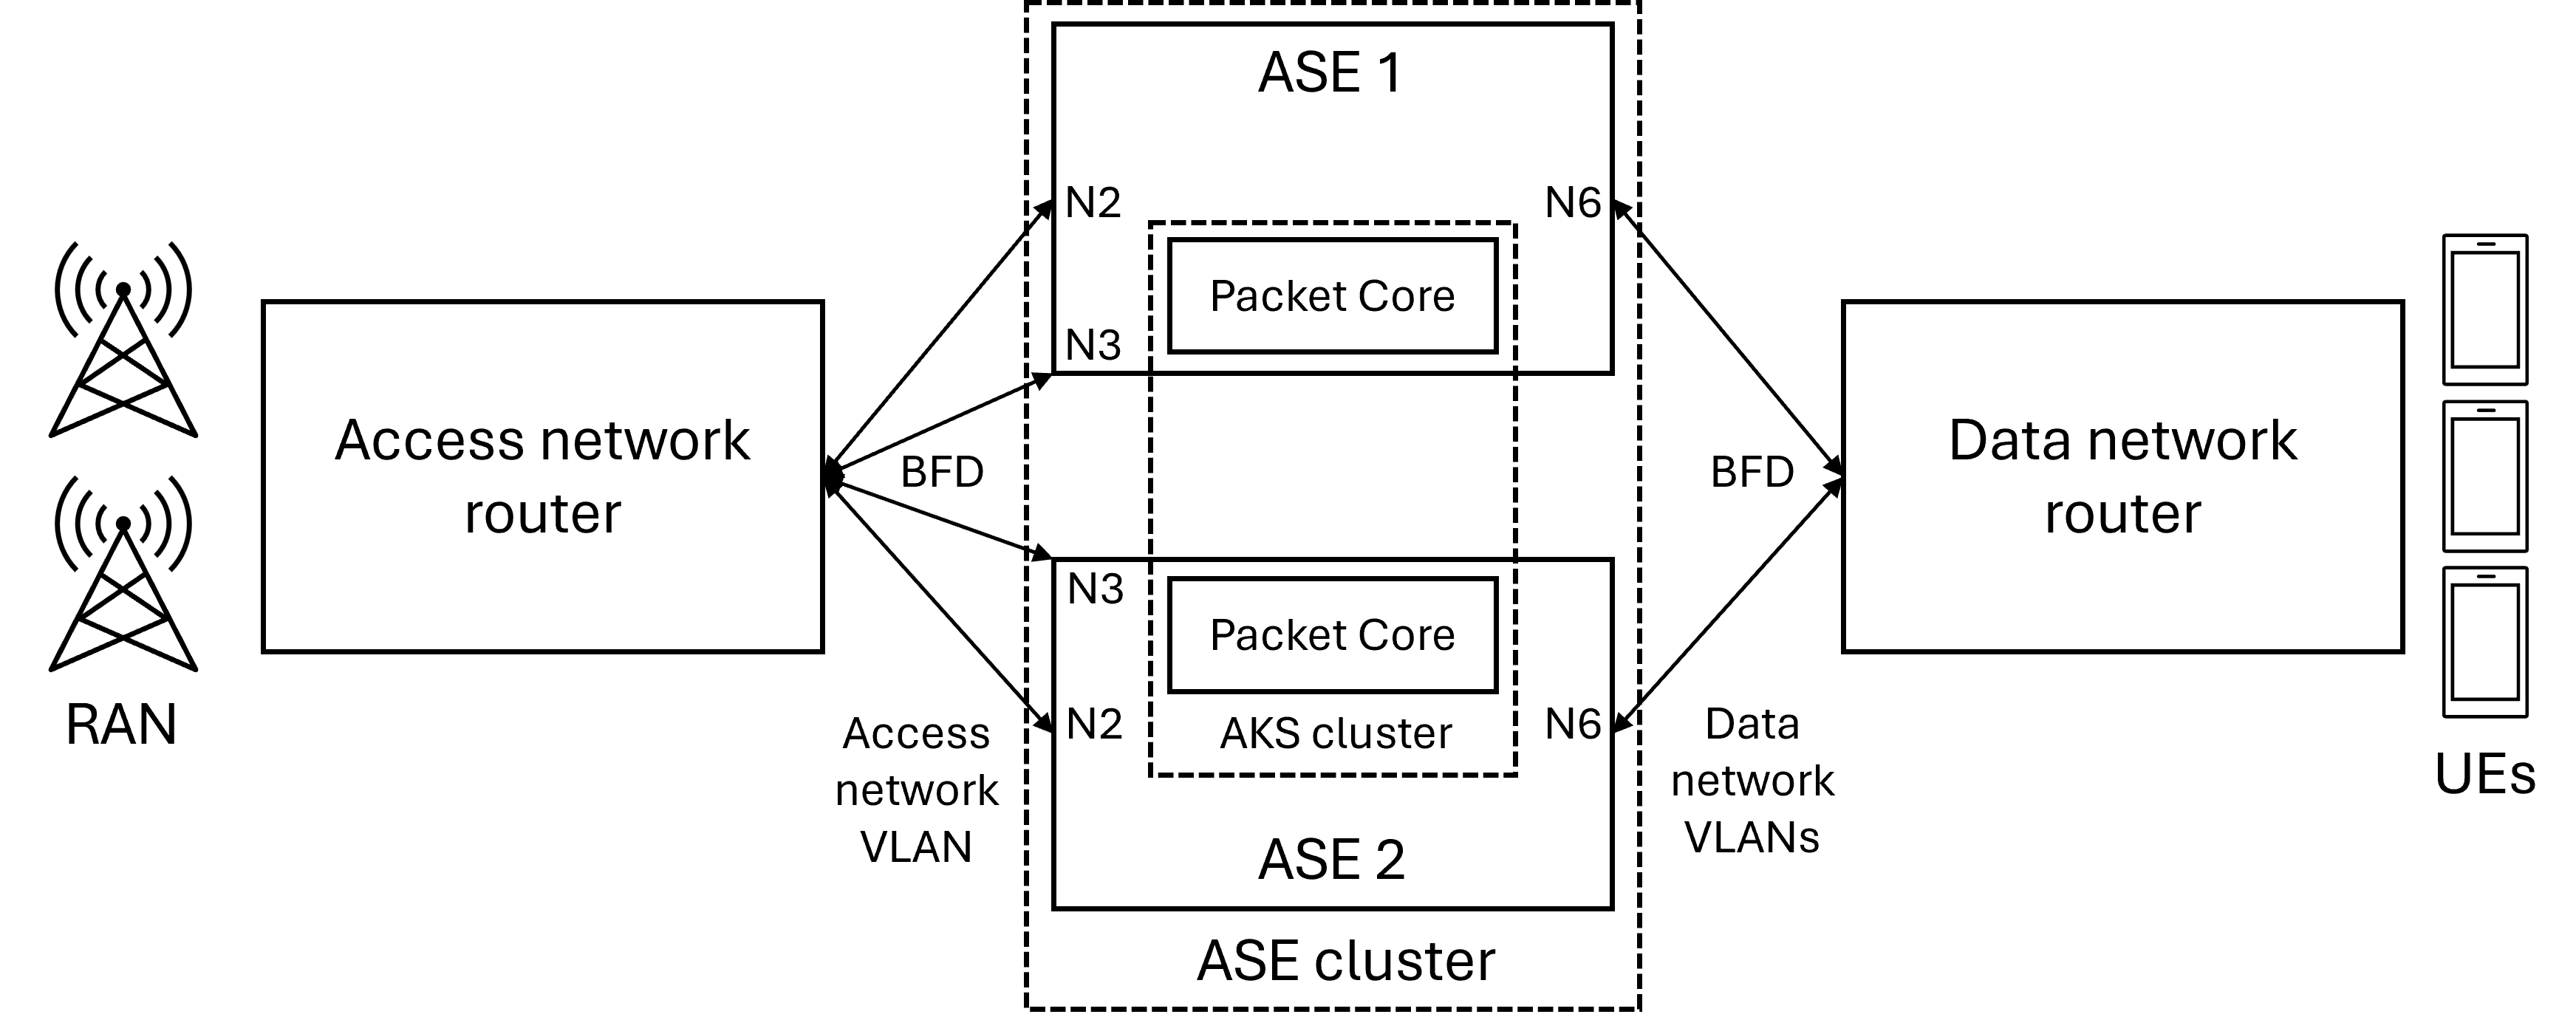 Diagramma che mostra una distribuzione a disponibilità elevata con un singolo router di rete di accesso e un singolo router di rete dati.